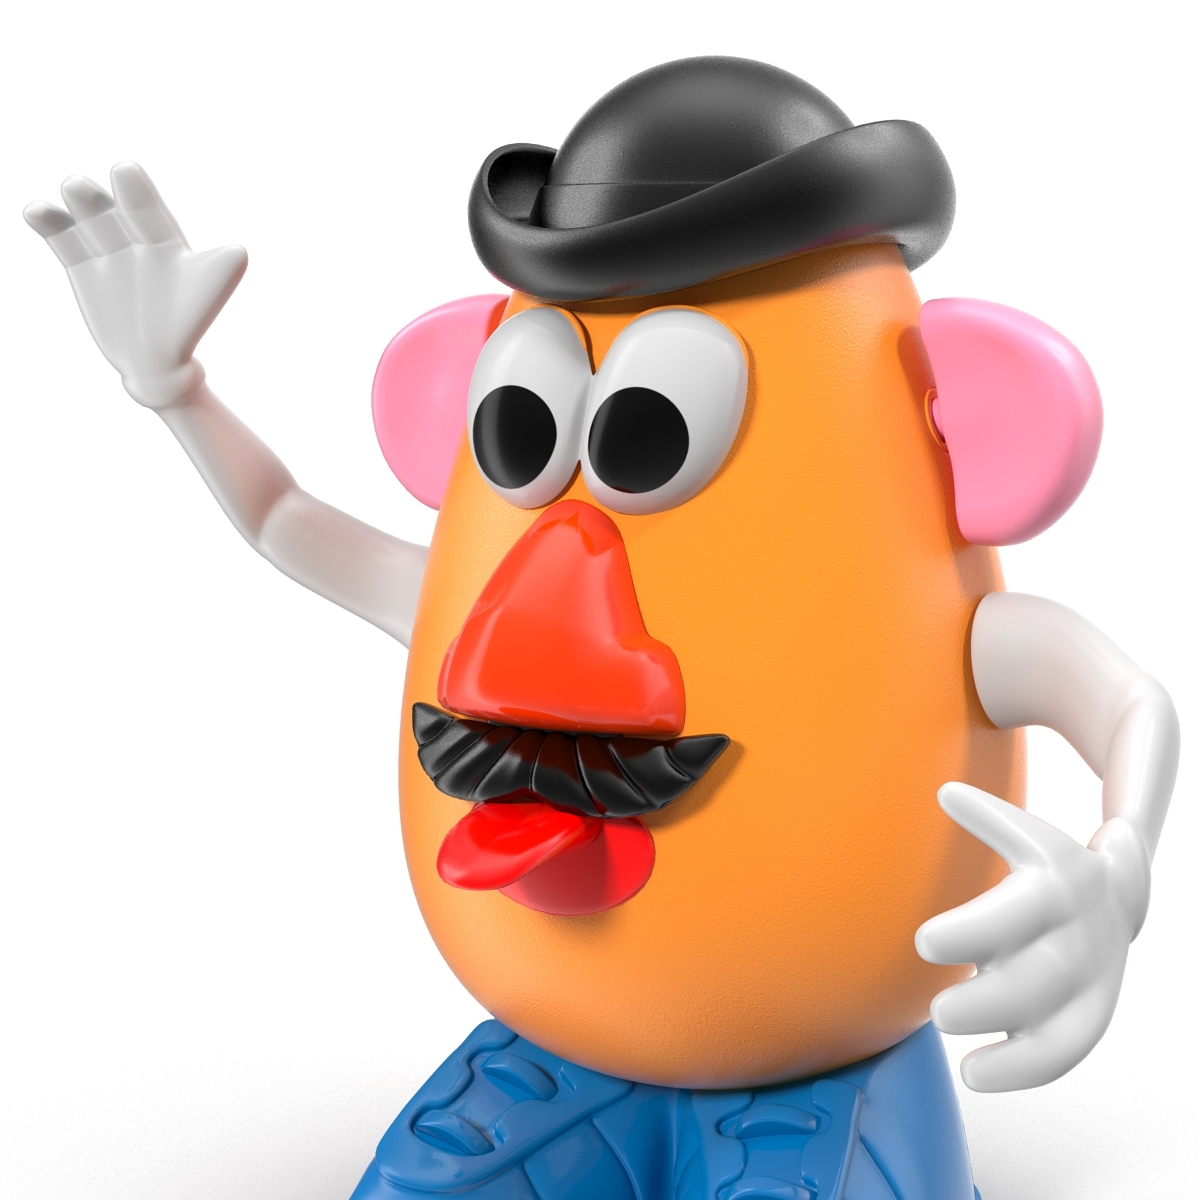 Mr potato. Мистер картофельная голова. Картофелина из истории игрушек. Мистер картошка из истории игрушек. Мистер картофельная голова из 3д принтера.